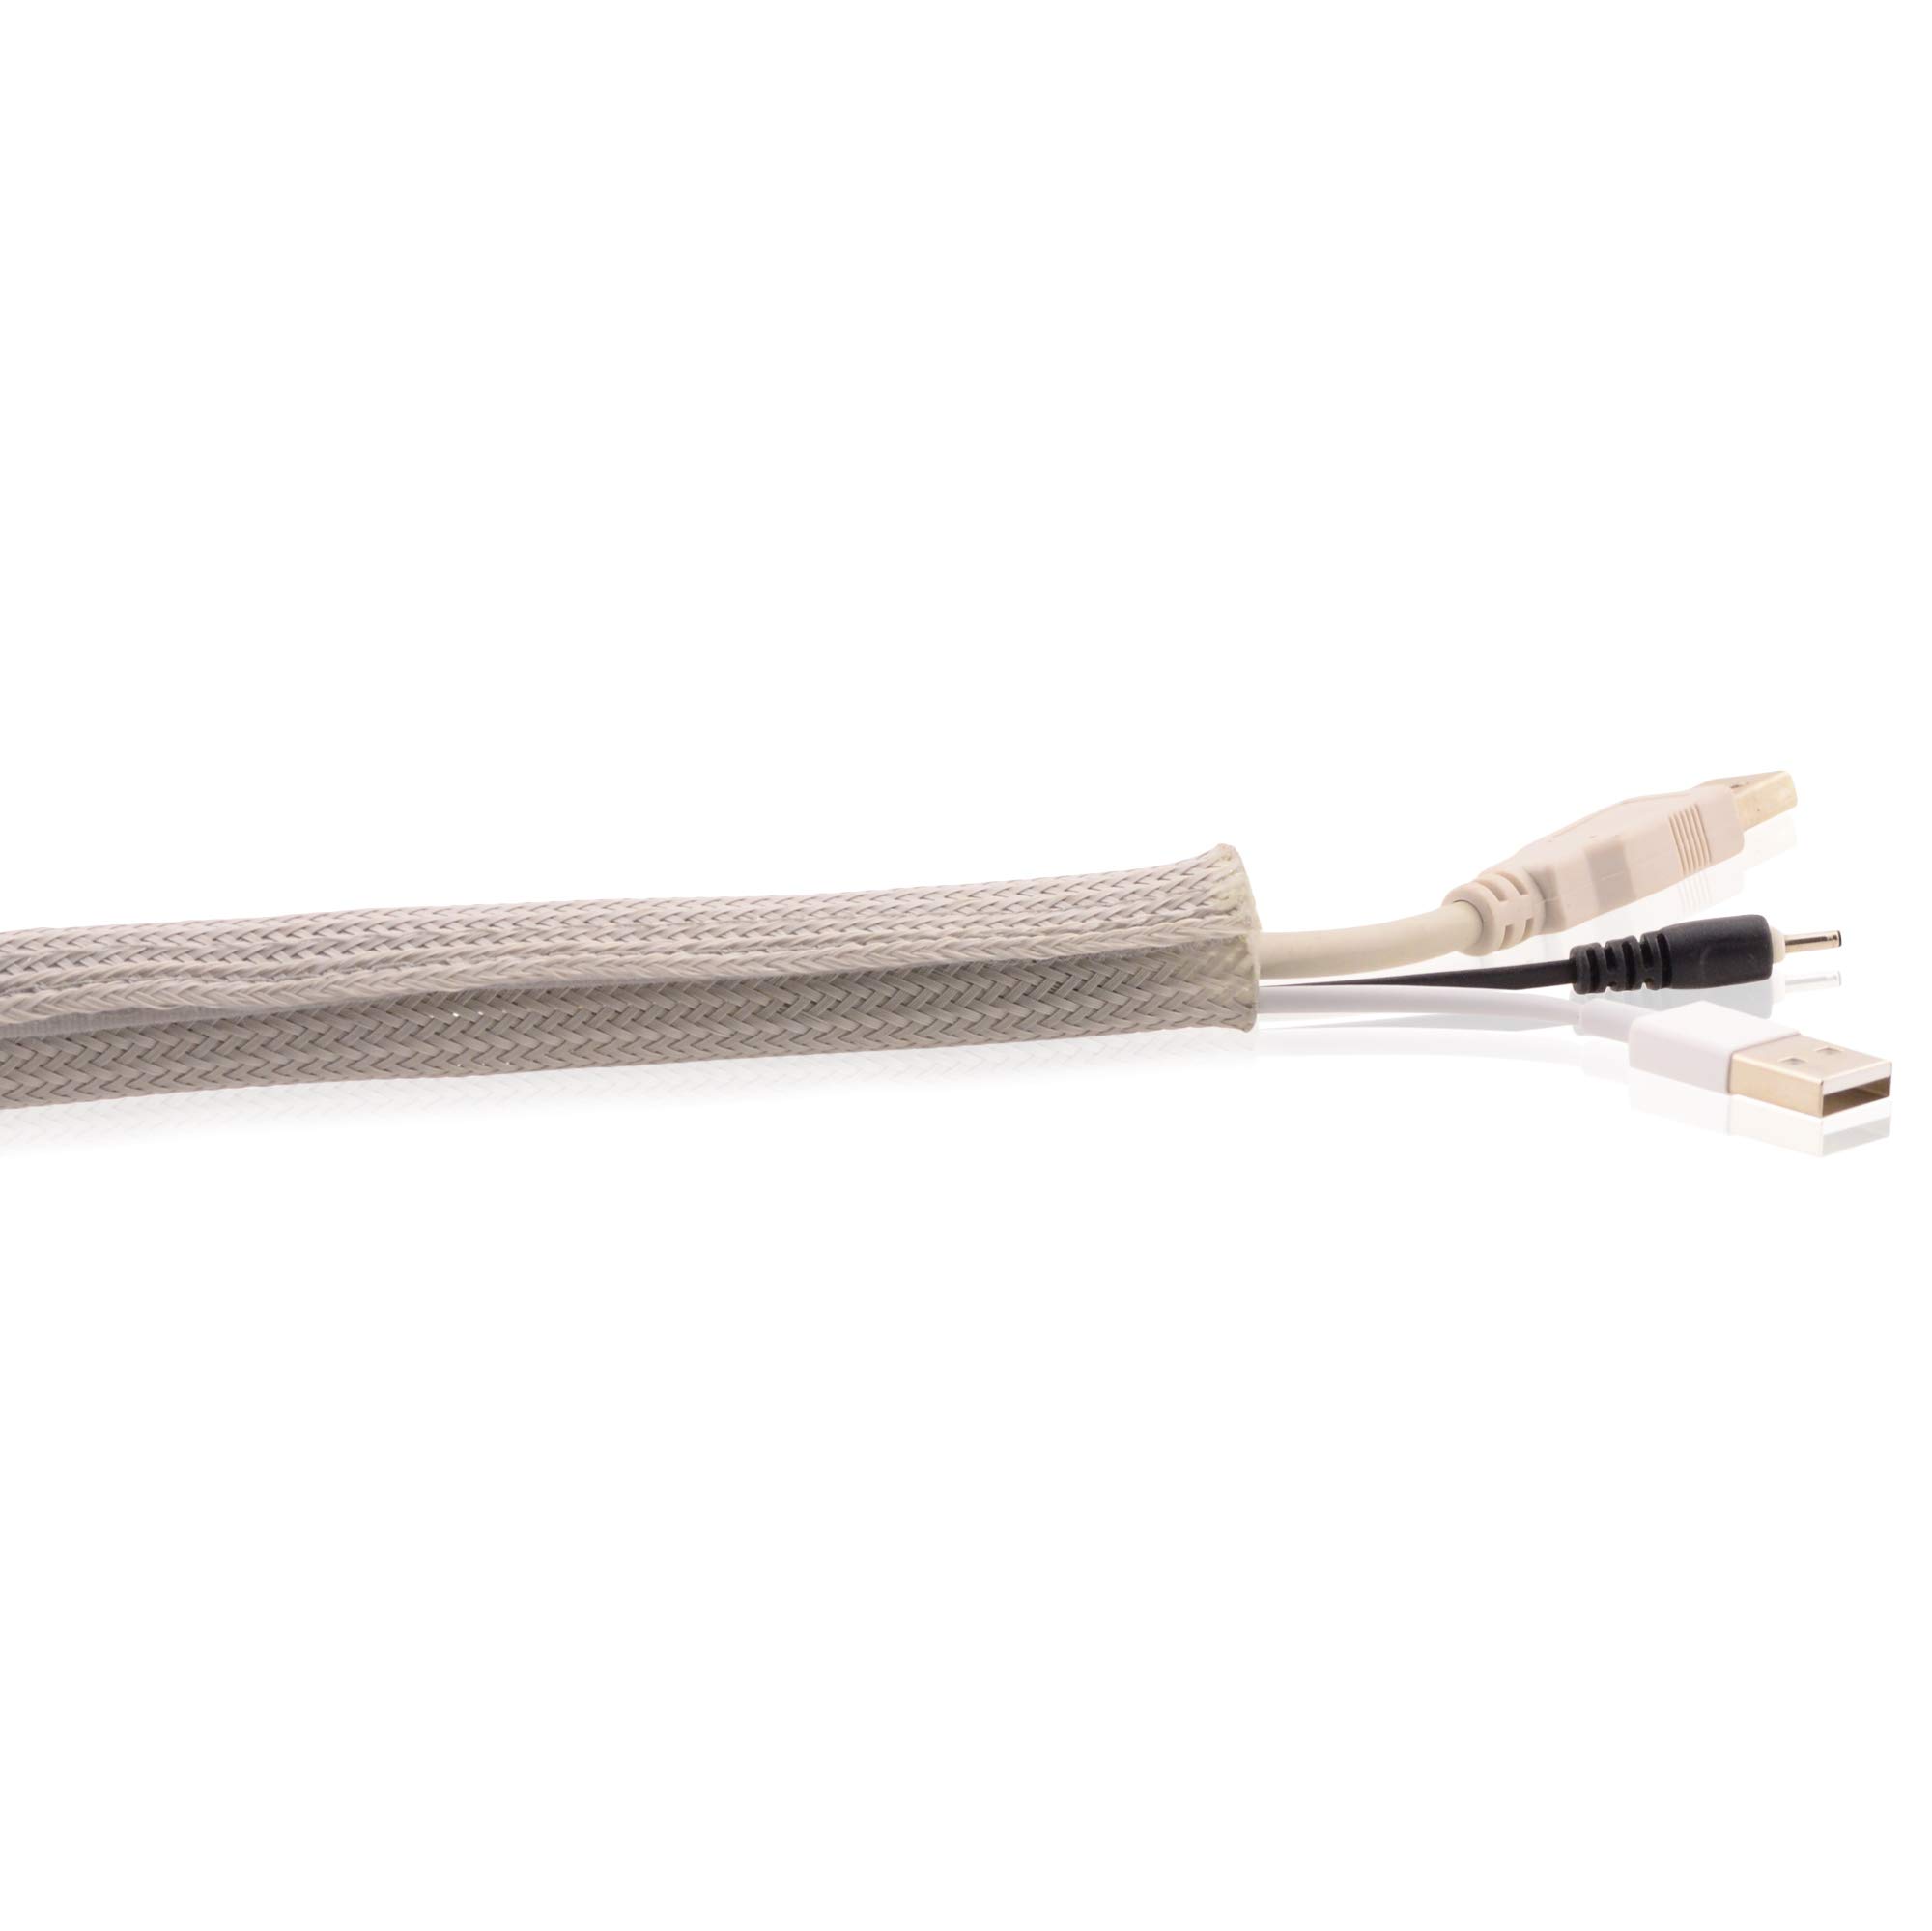 Kabelschlauch Gewebeschlauch in Grau mit praktischem Klettverschluss, 36-40mm Durchmesser, Länge 5m für eine flexible Kabelsortierung & Kabelschutz